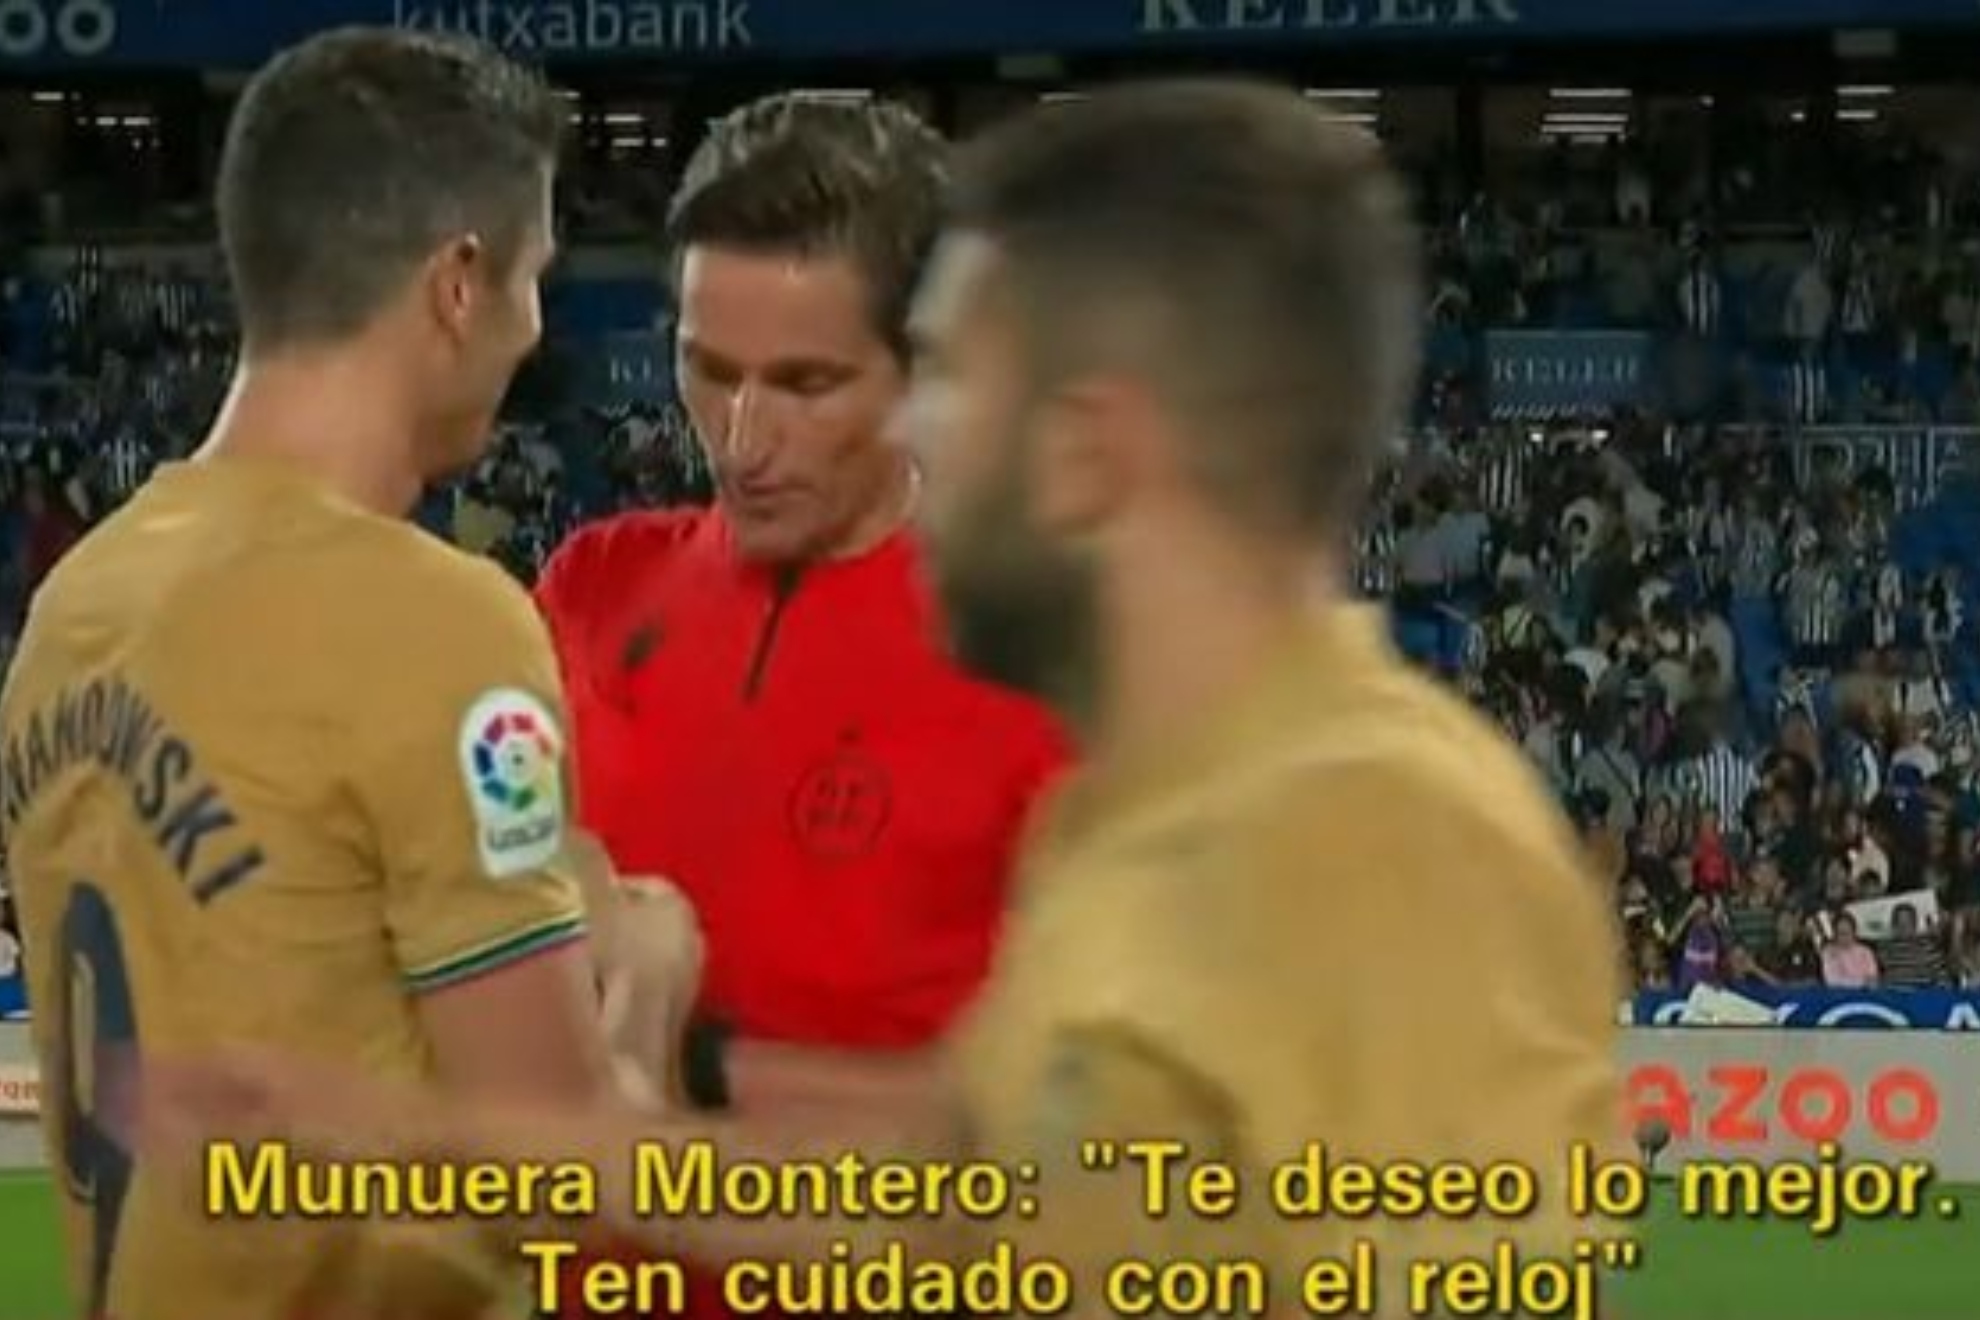 La broma de Munuera Montero a Lewandowski tras el partido: "Ten cuidado con el reloj"